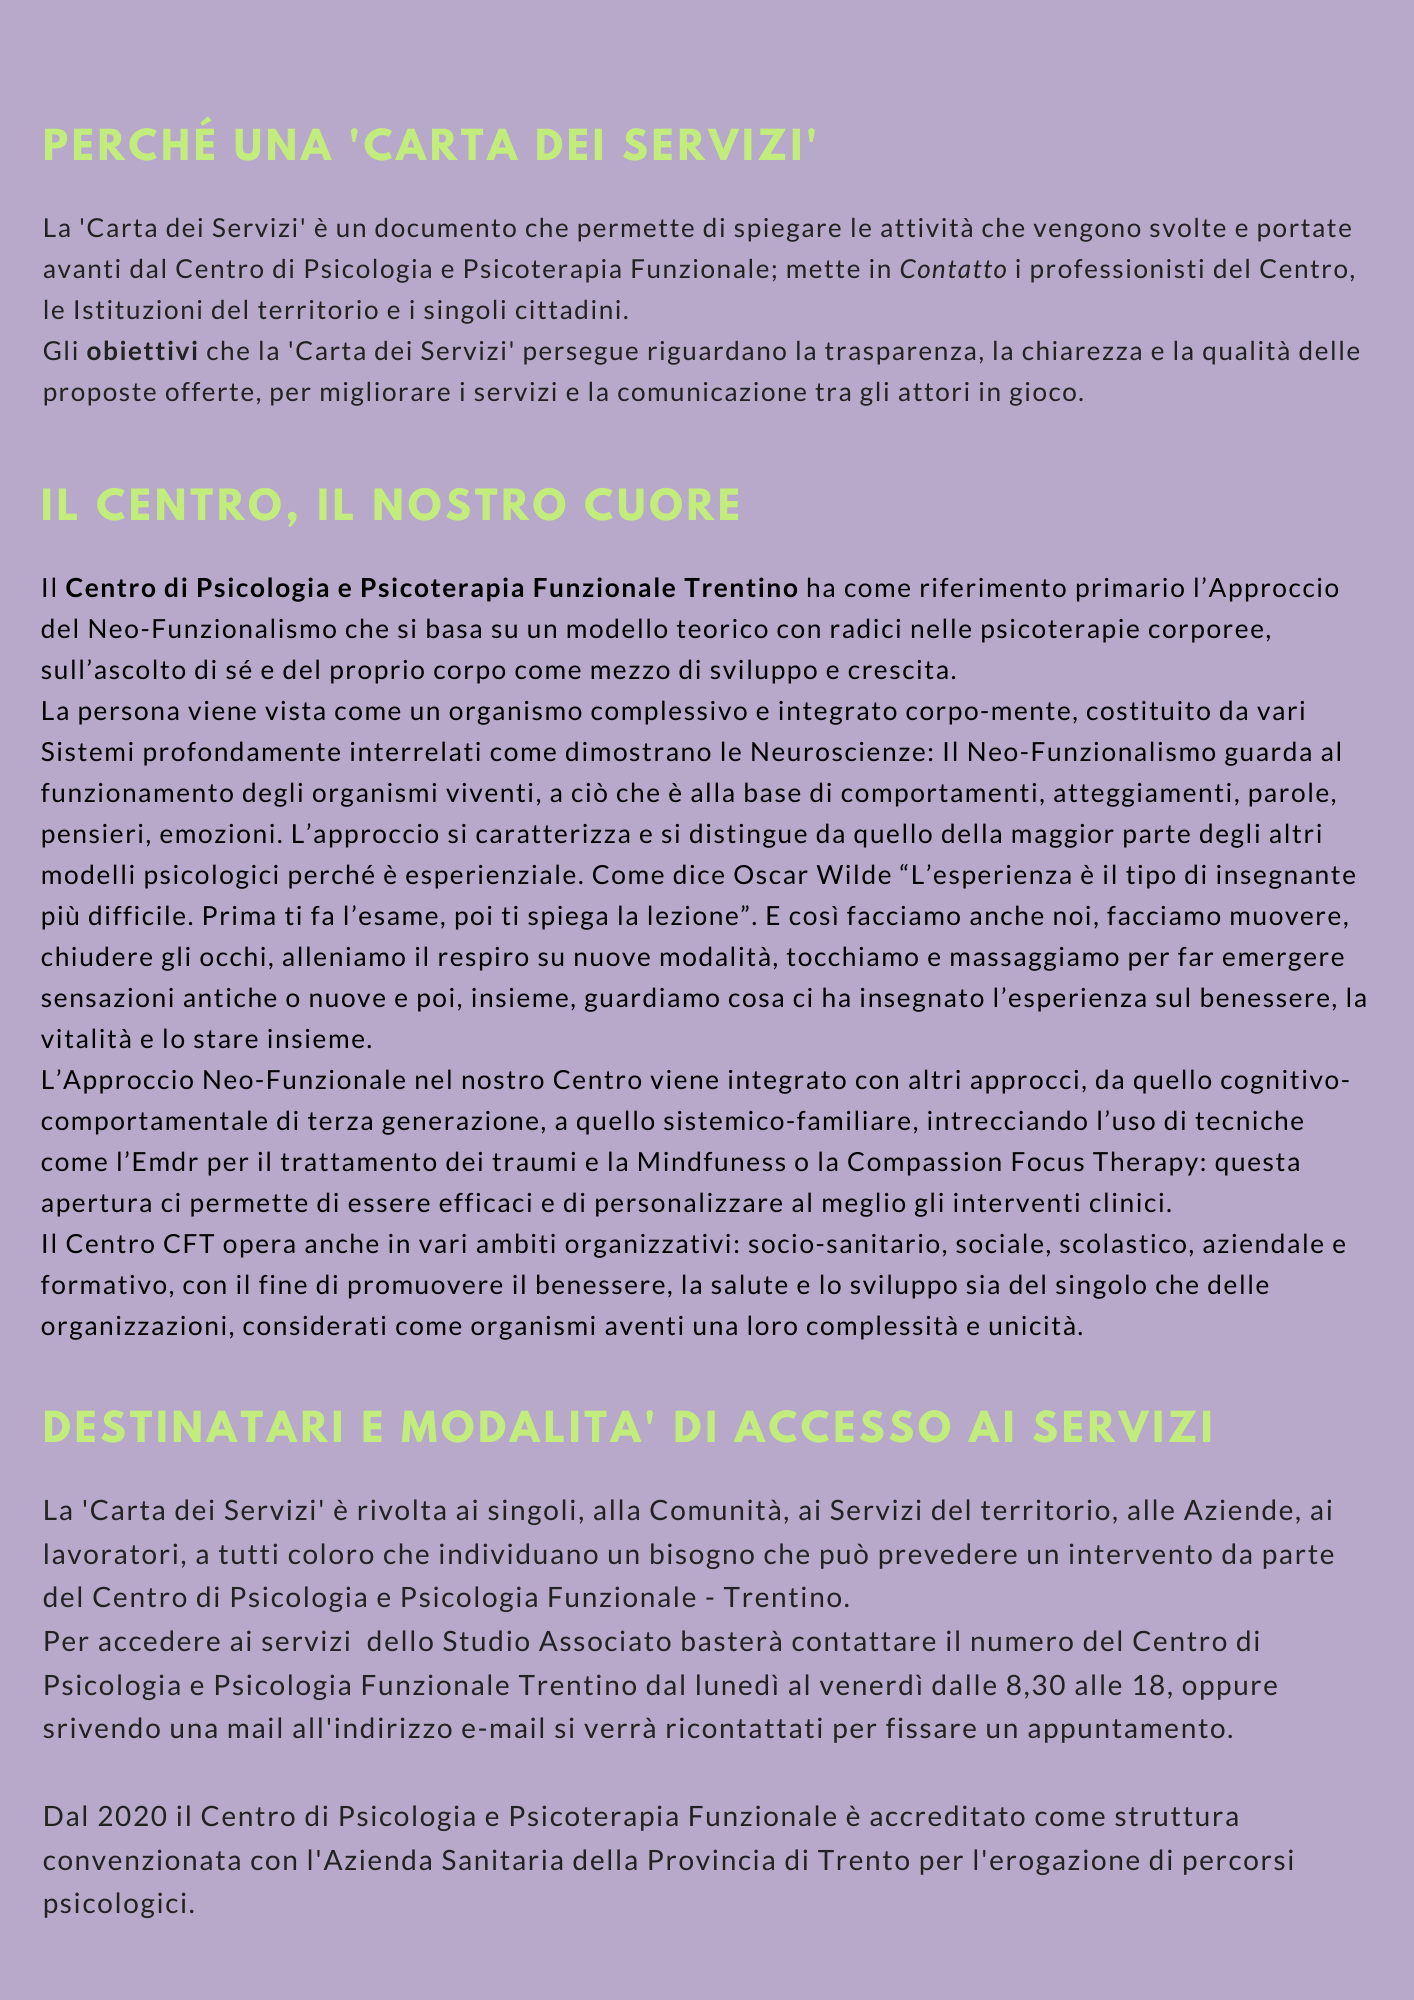 La carta dei servizi dello STUDIO ASSOCIATO DI PSICOLOGIA CFT di Trento